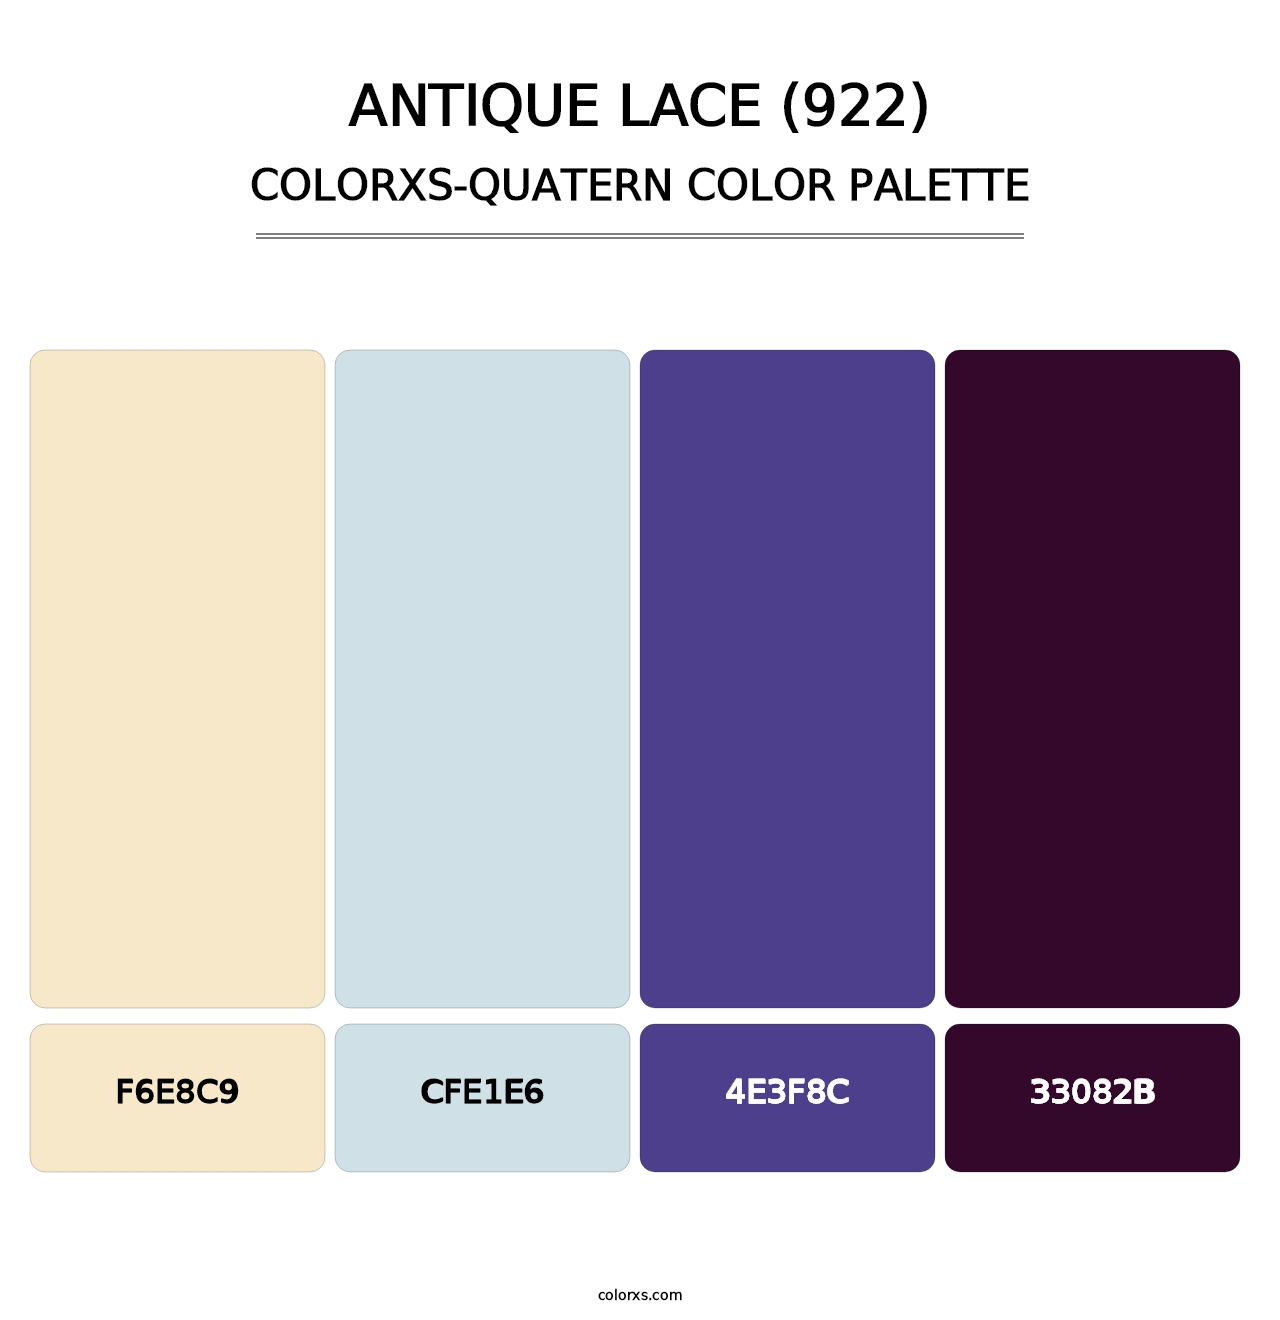 Antique Lace (922) - Colorxs Quatern Palette